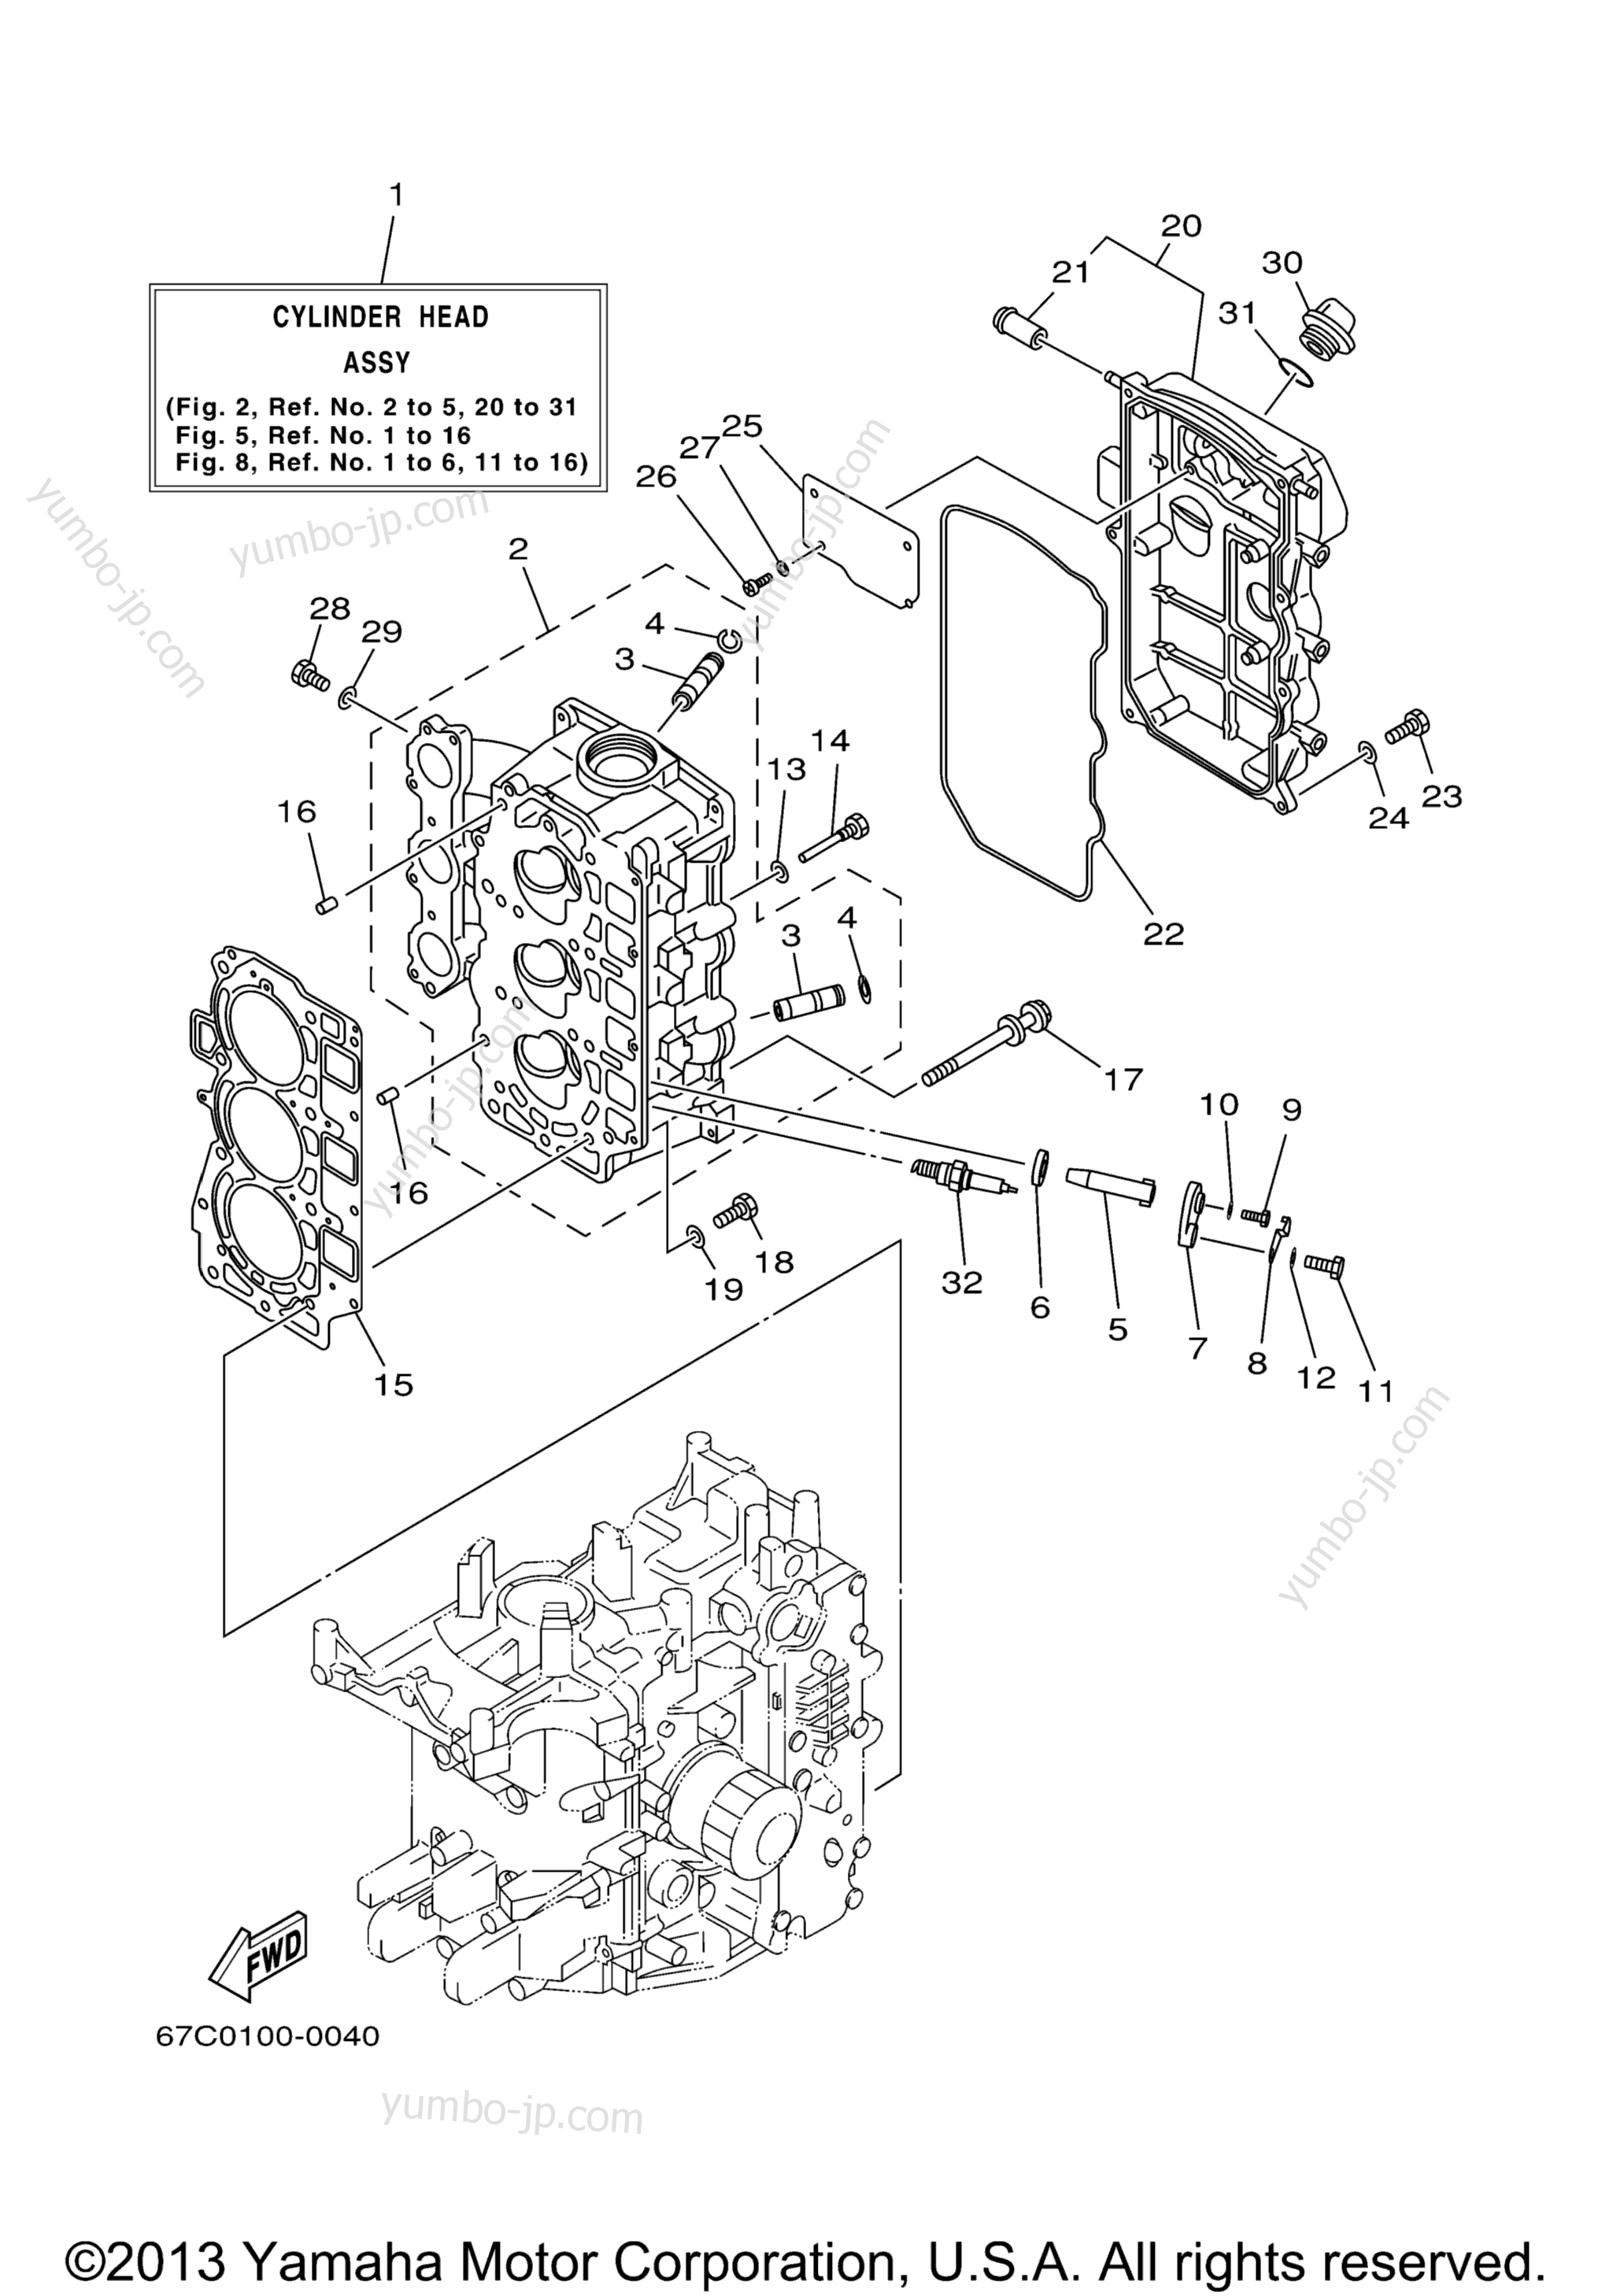 Cylinder Crankcase 2 для лодочных моторов YAMAHA F40TLRY 2000 г.